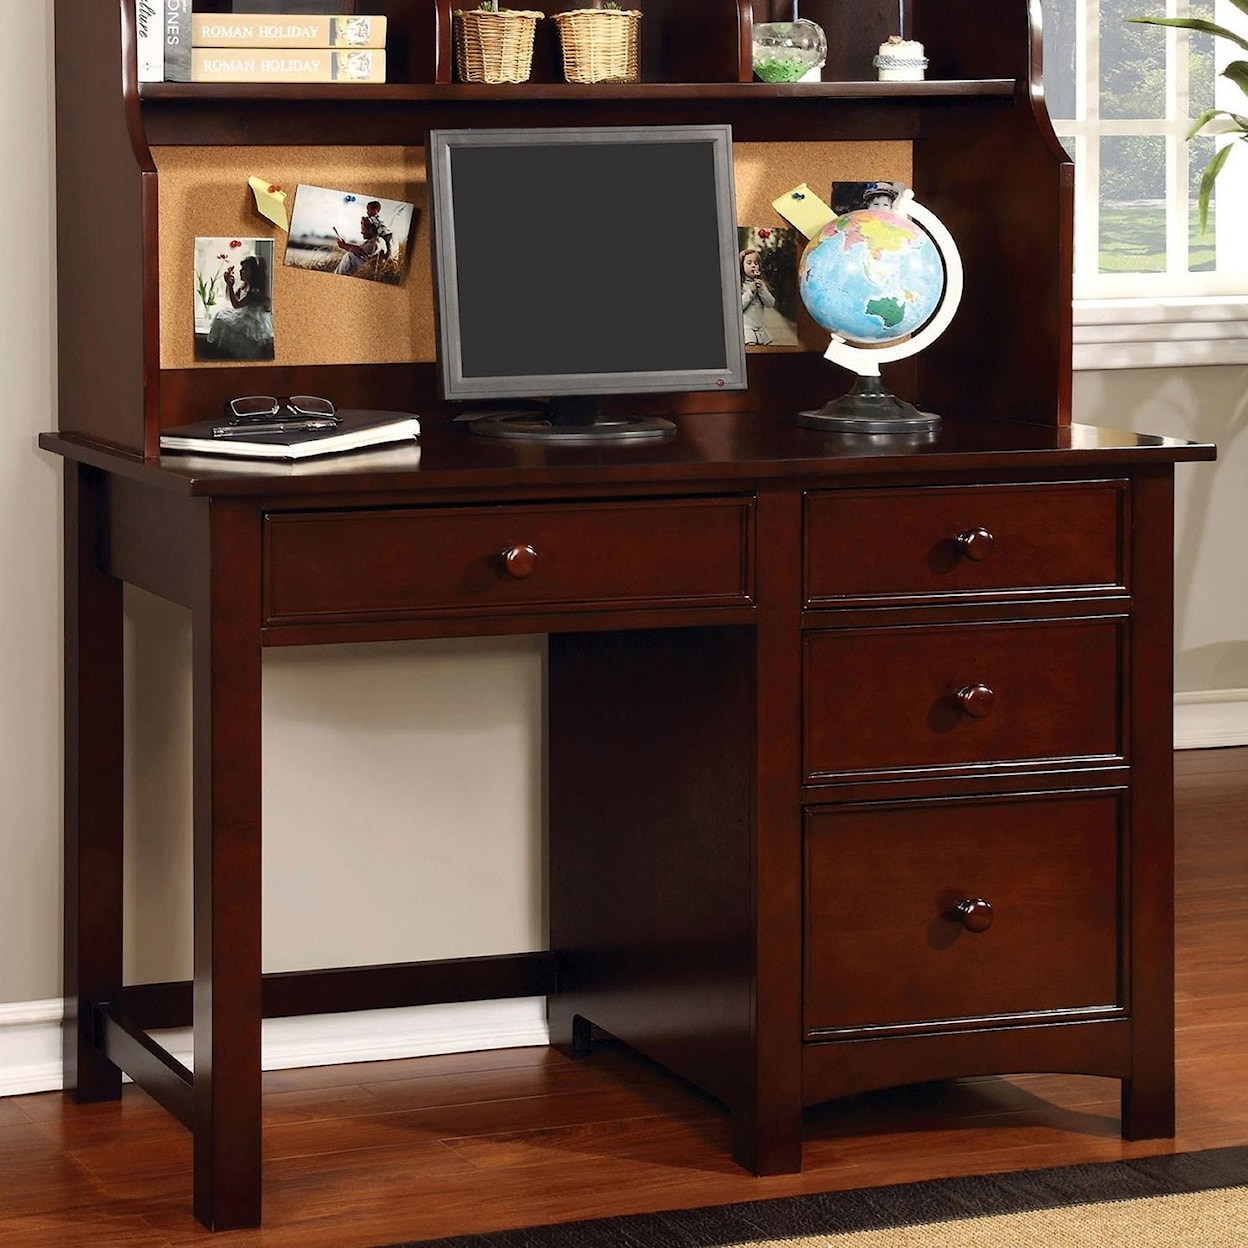 Furniture of America Omnus Desk